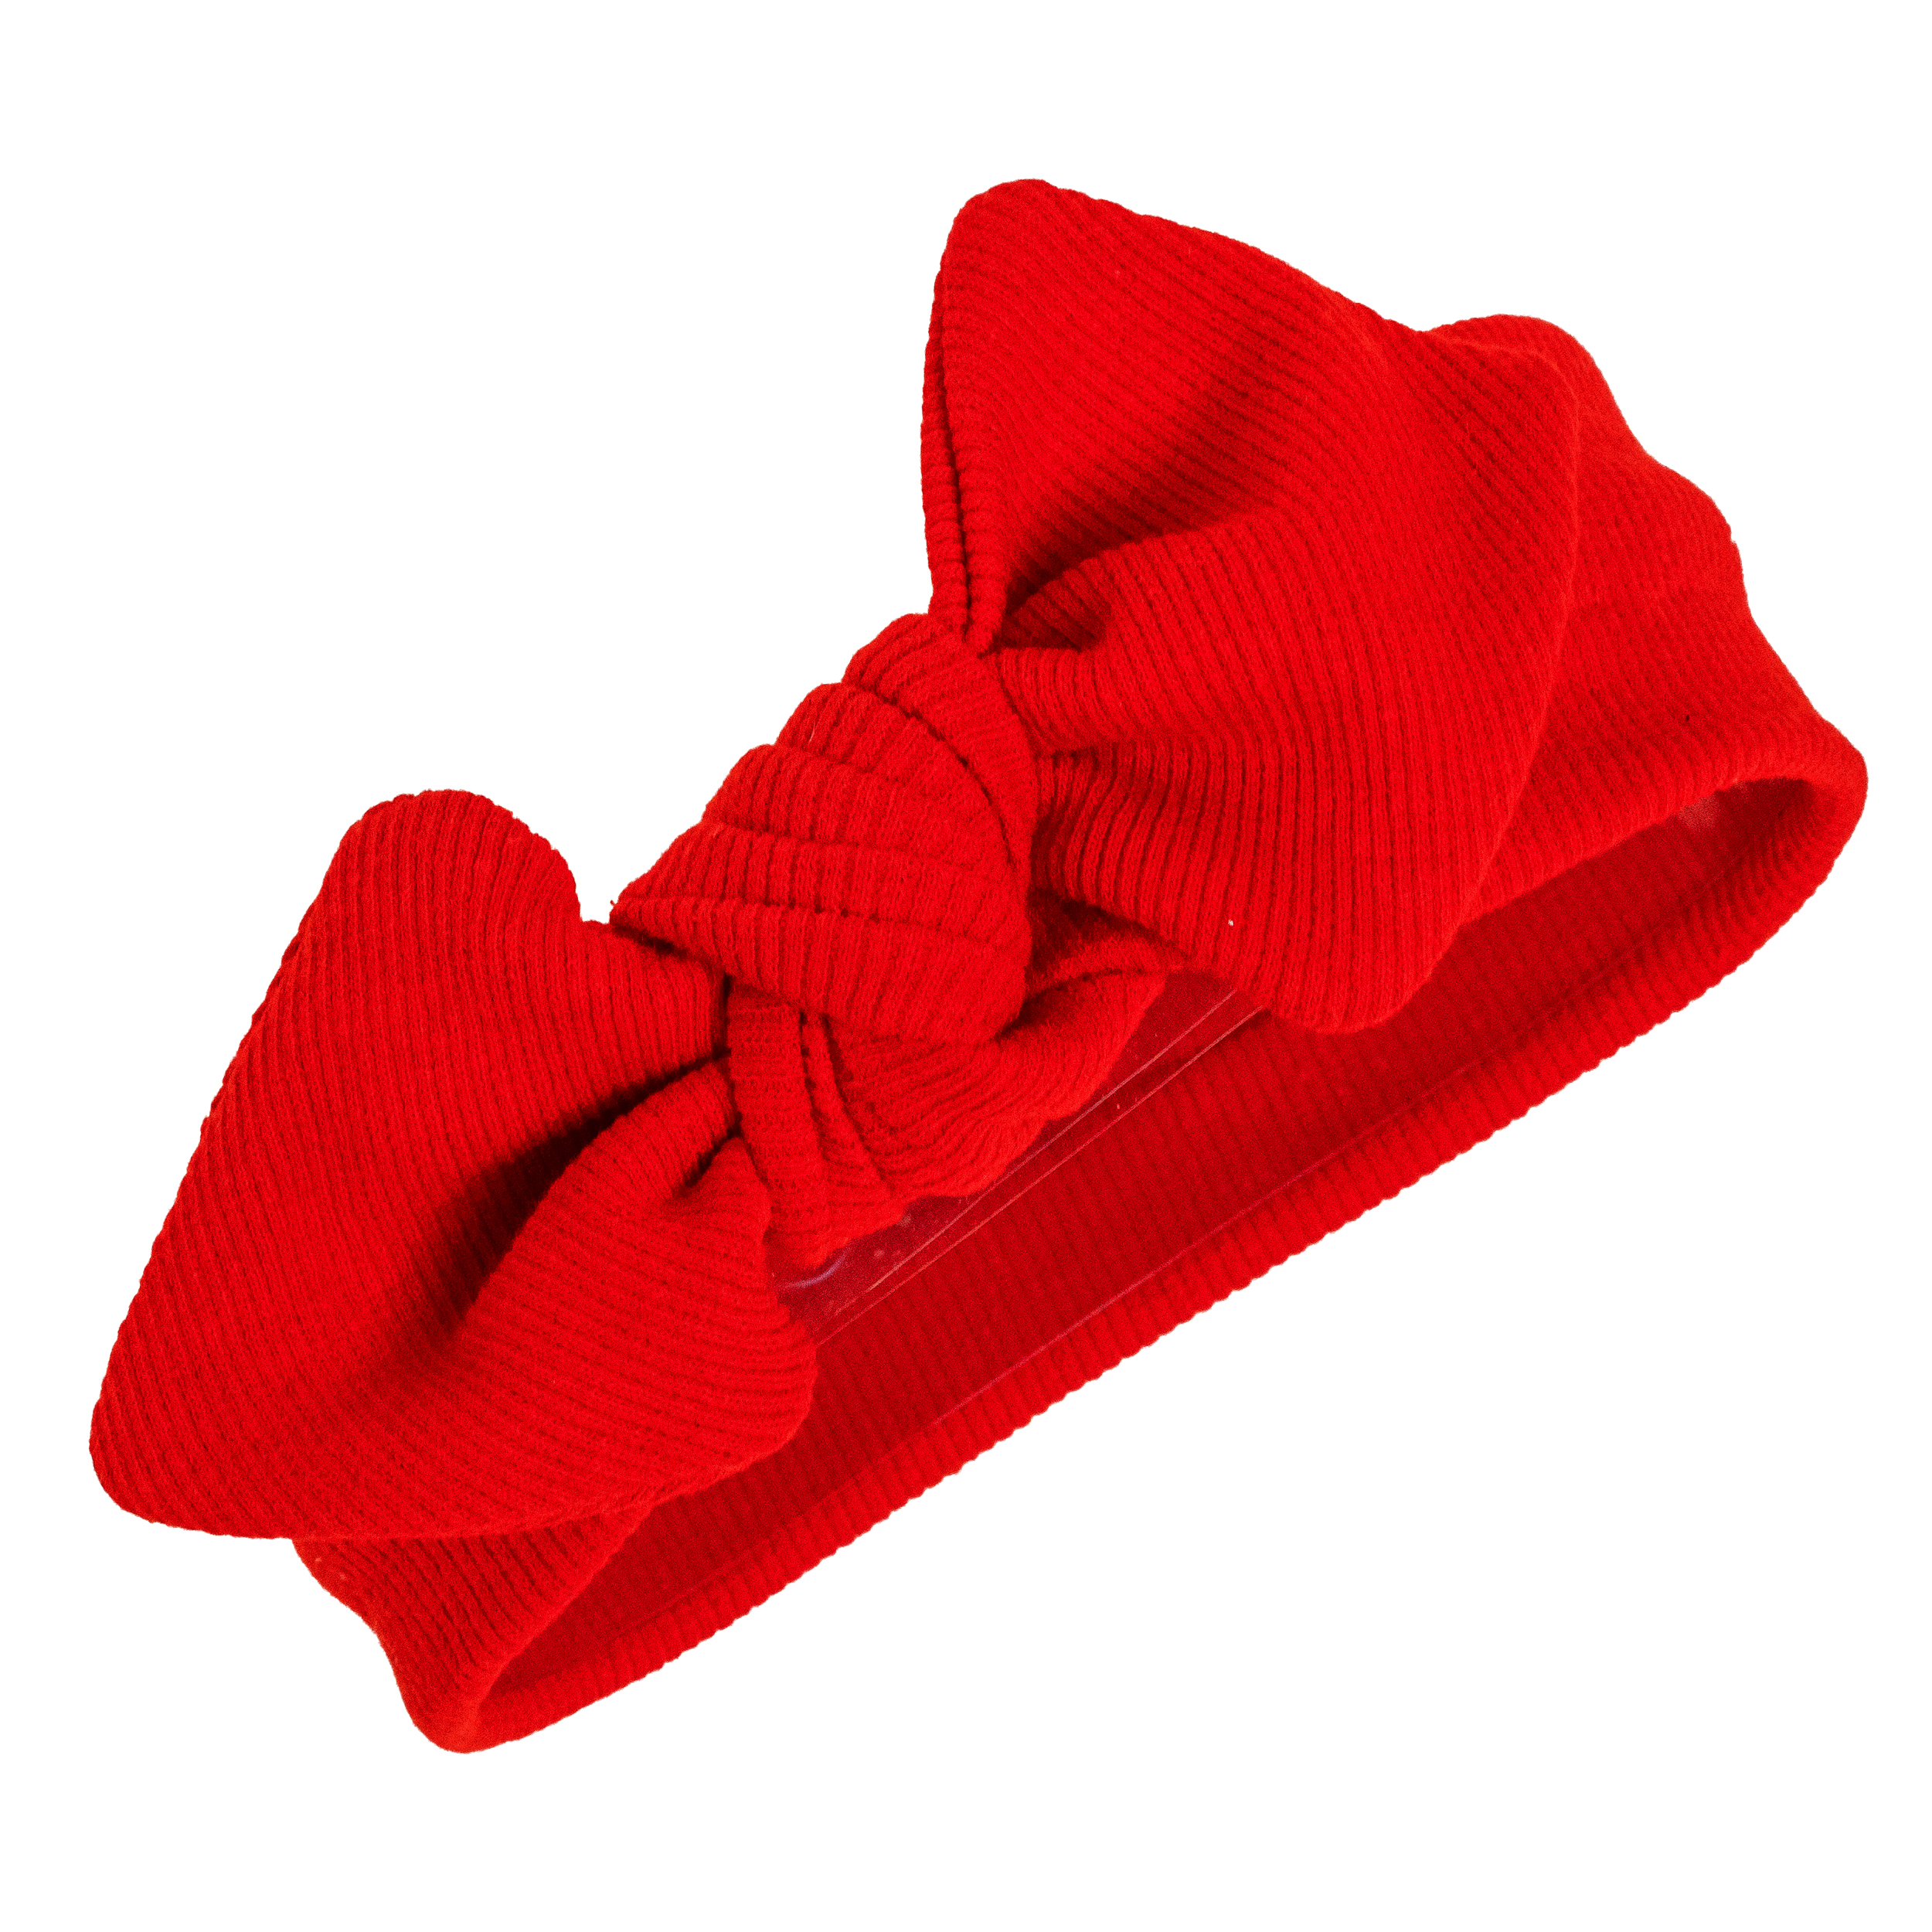 هدبند نوزادی مدل کبریتی رنگ قرمز